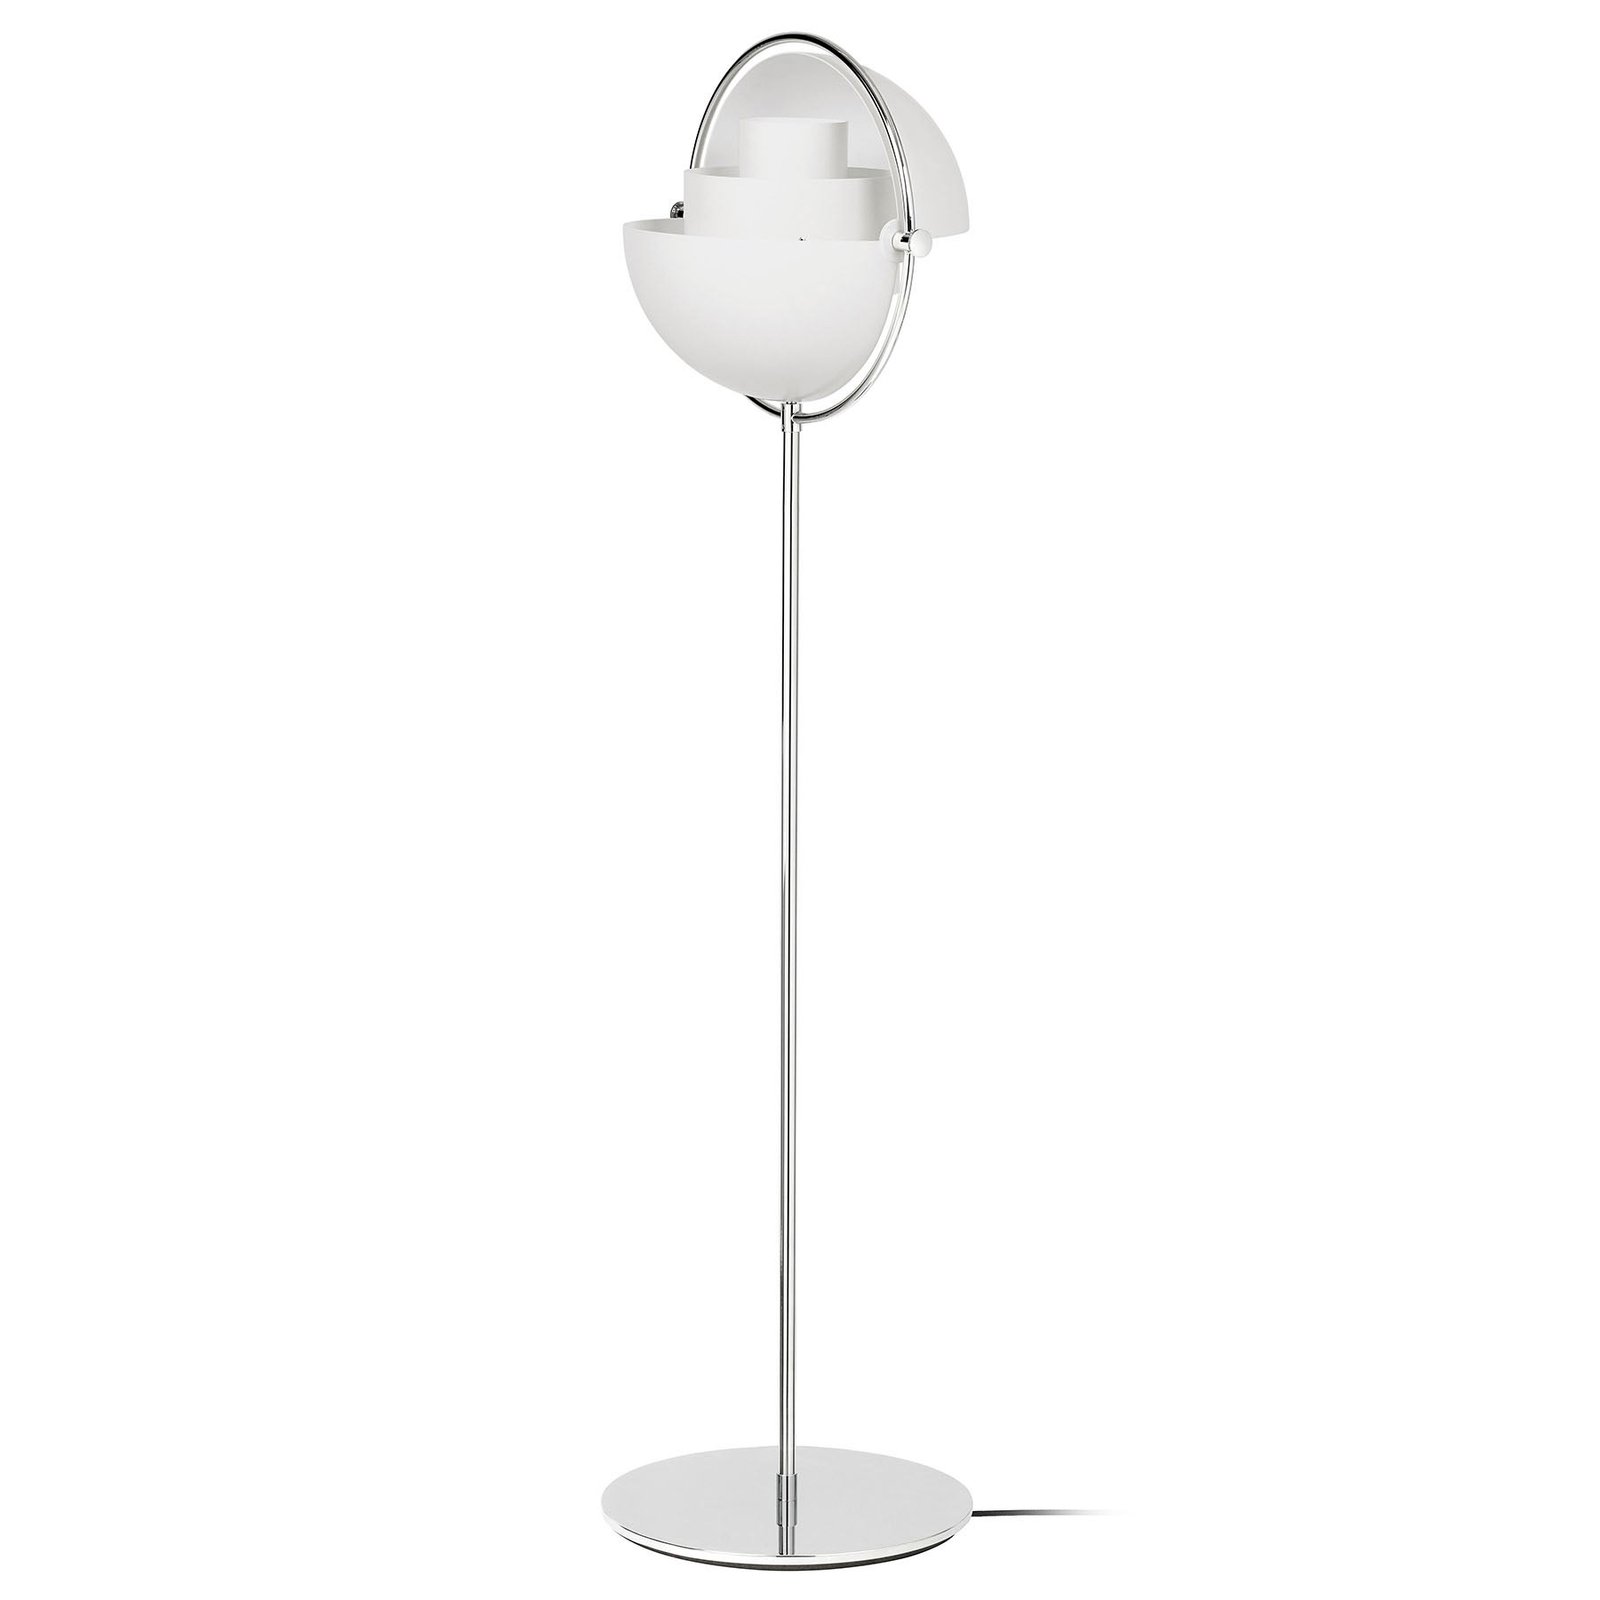 Lampa stojąca Gubi Lite, wysokość 148 cm, chrom/biały